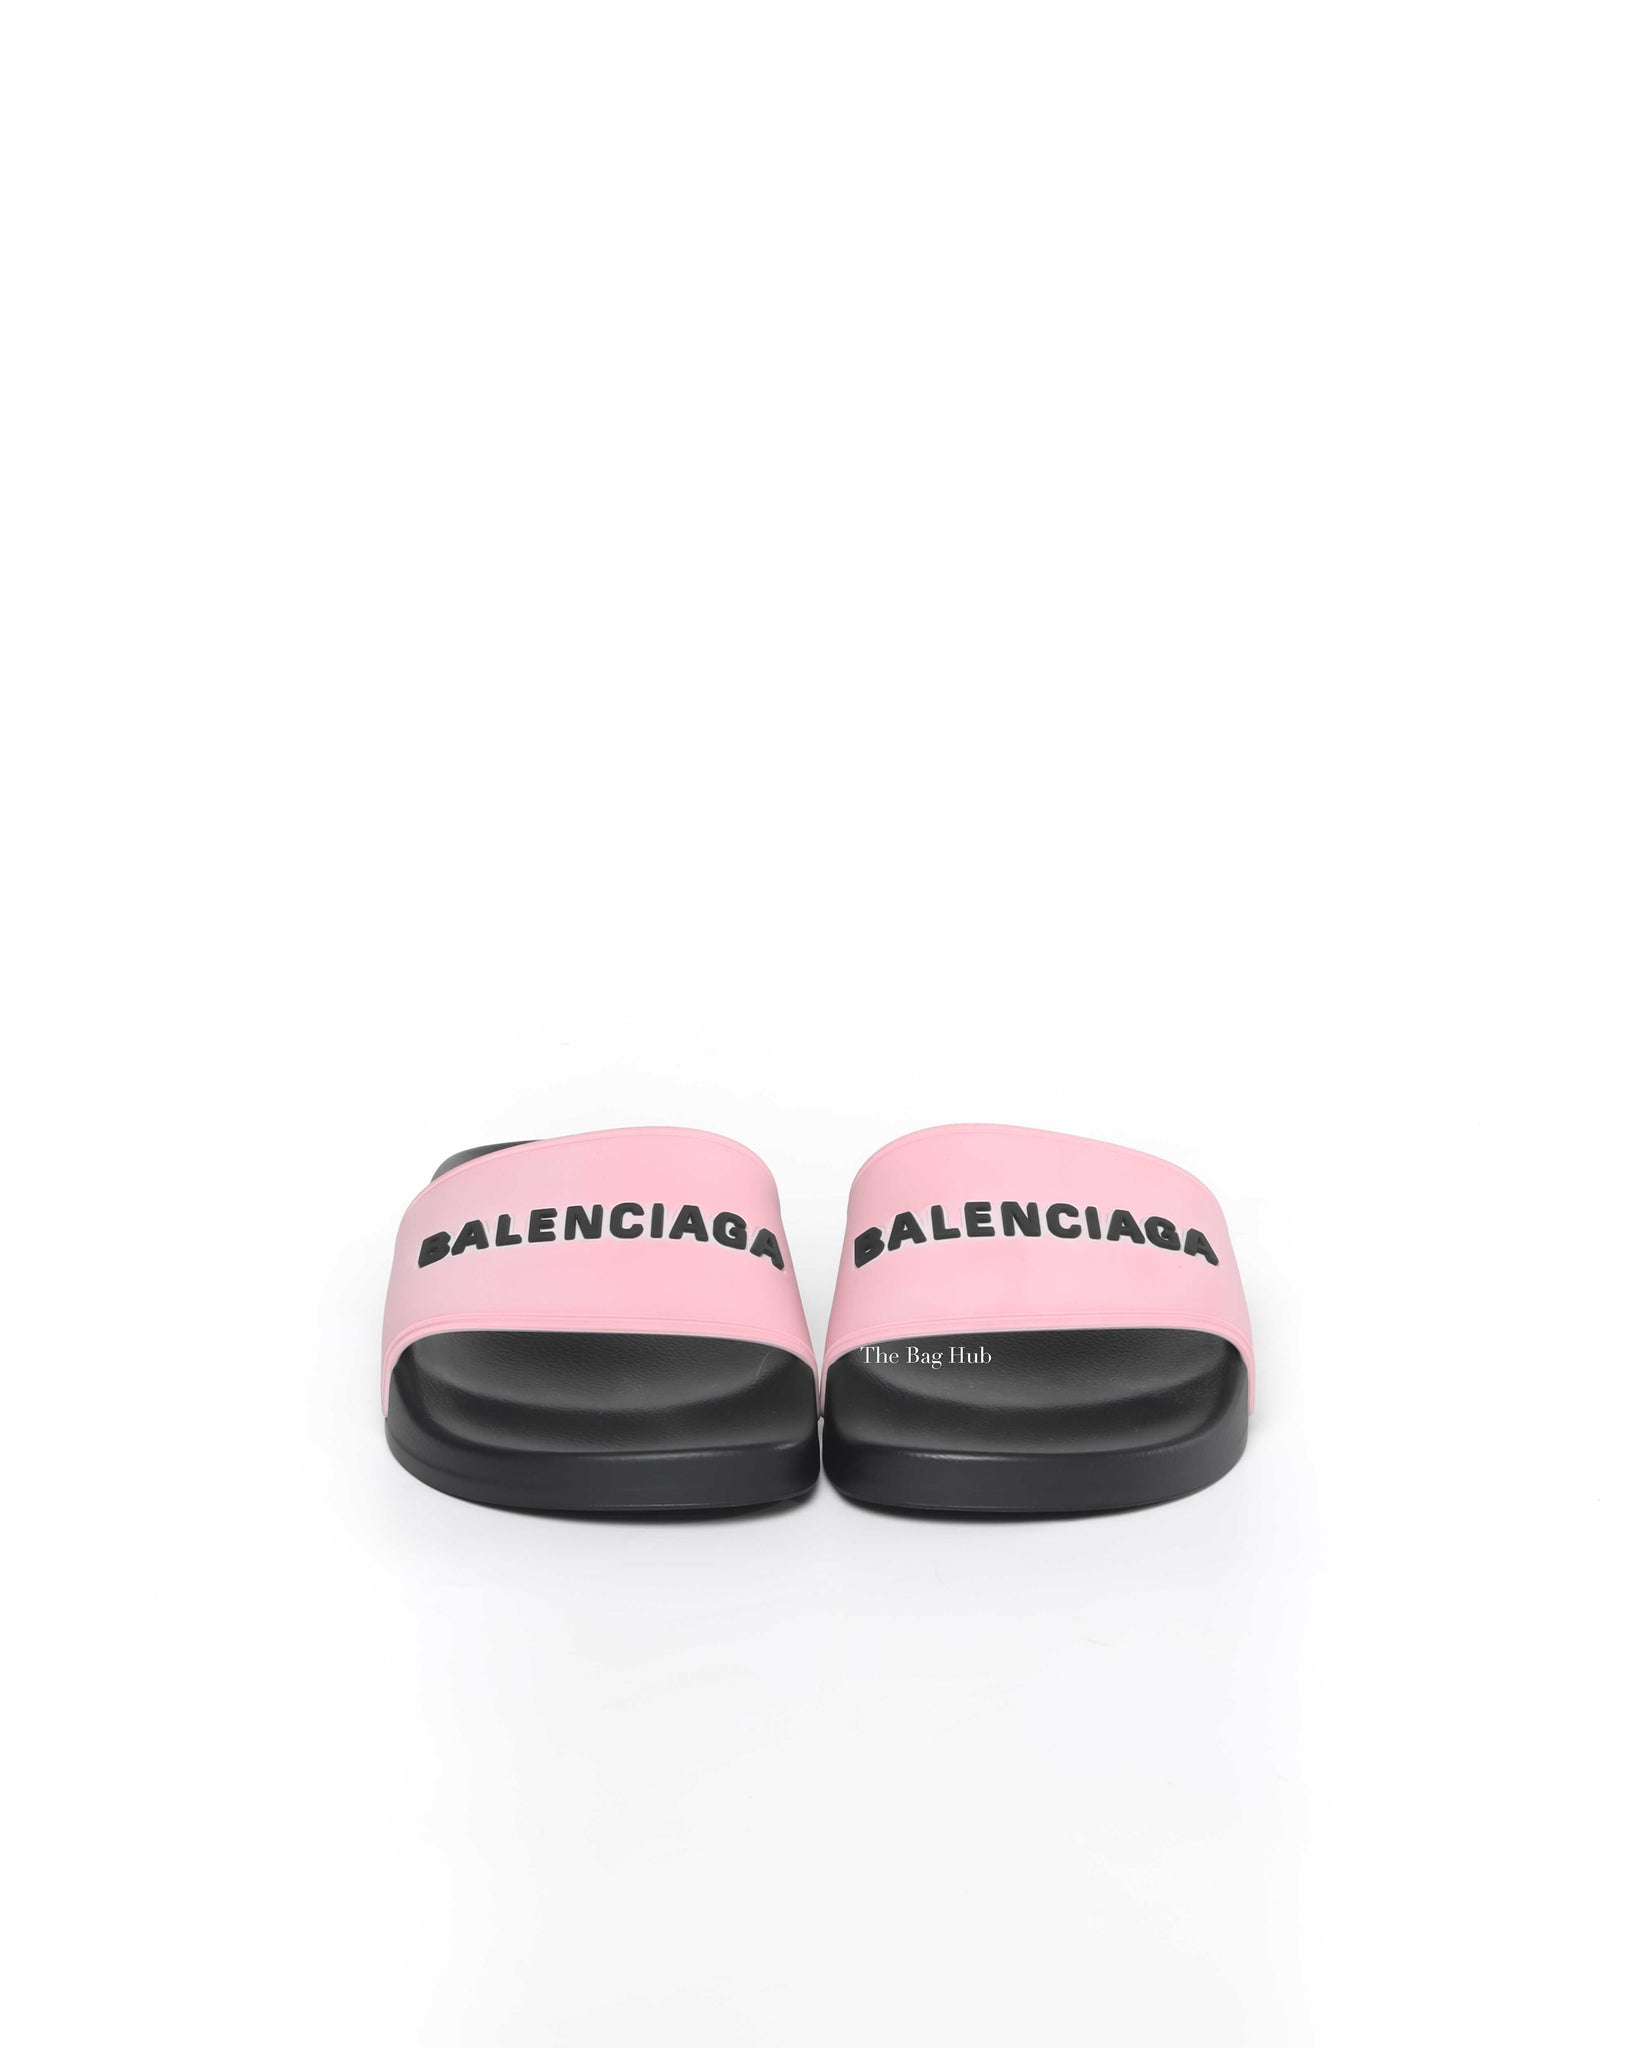 Balenciaga Black/Pink Rubber Women's Pool Slides Size 35-3